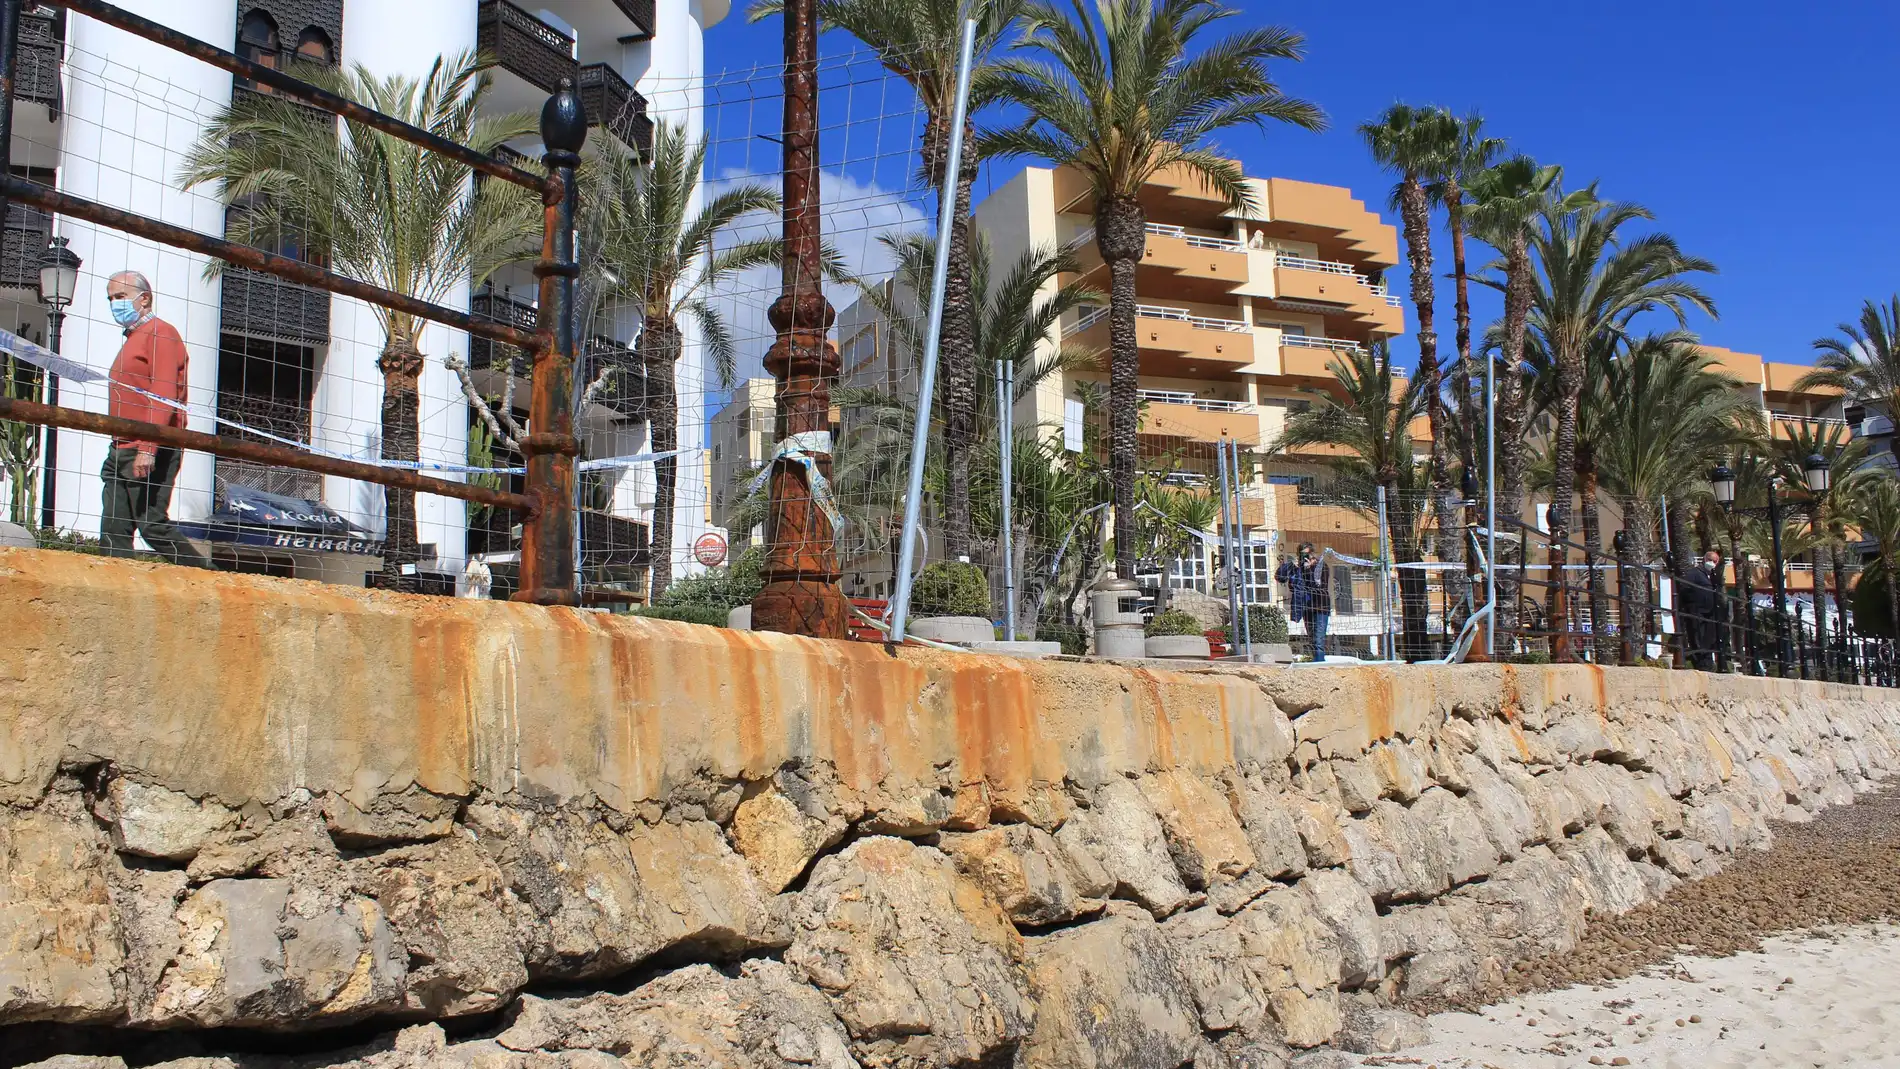 Costas autoriza al Ayuntamiento de Santa Eulària a reparar la zona dañada del Paseo Marítimo